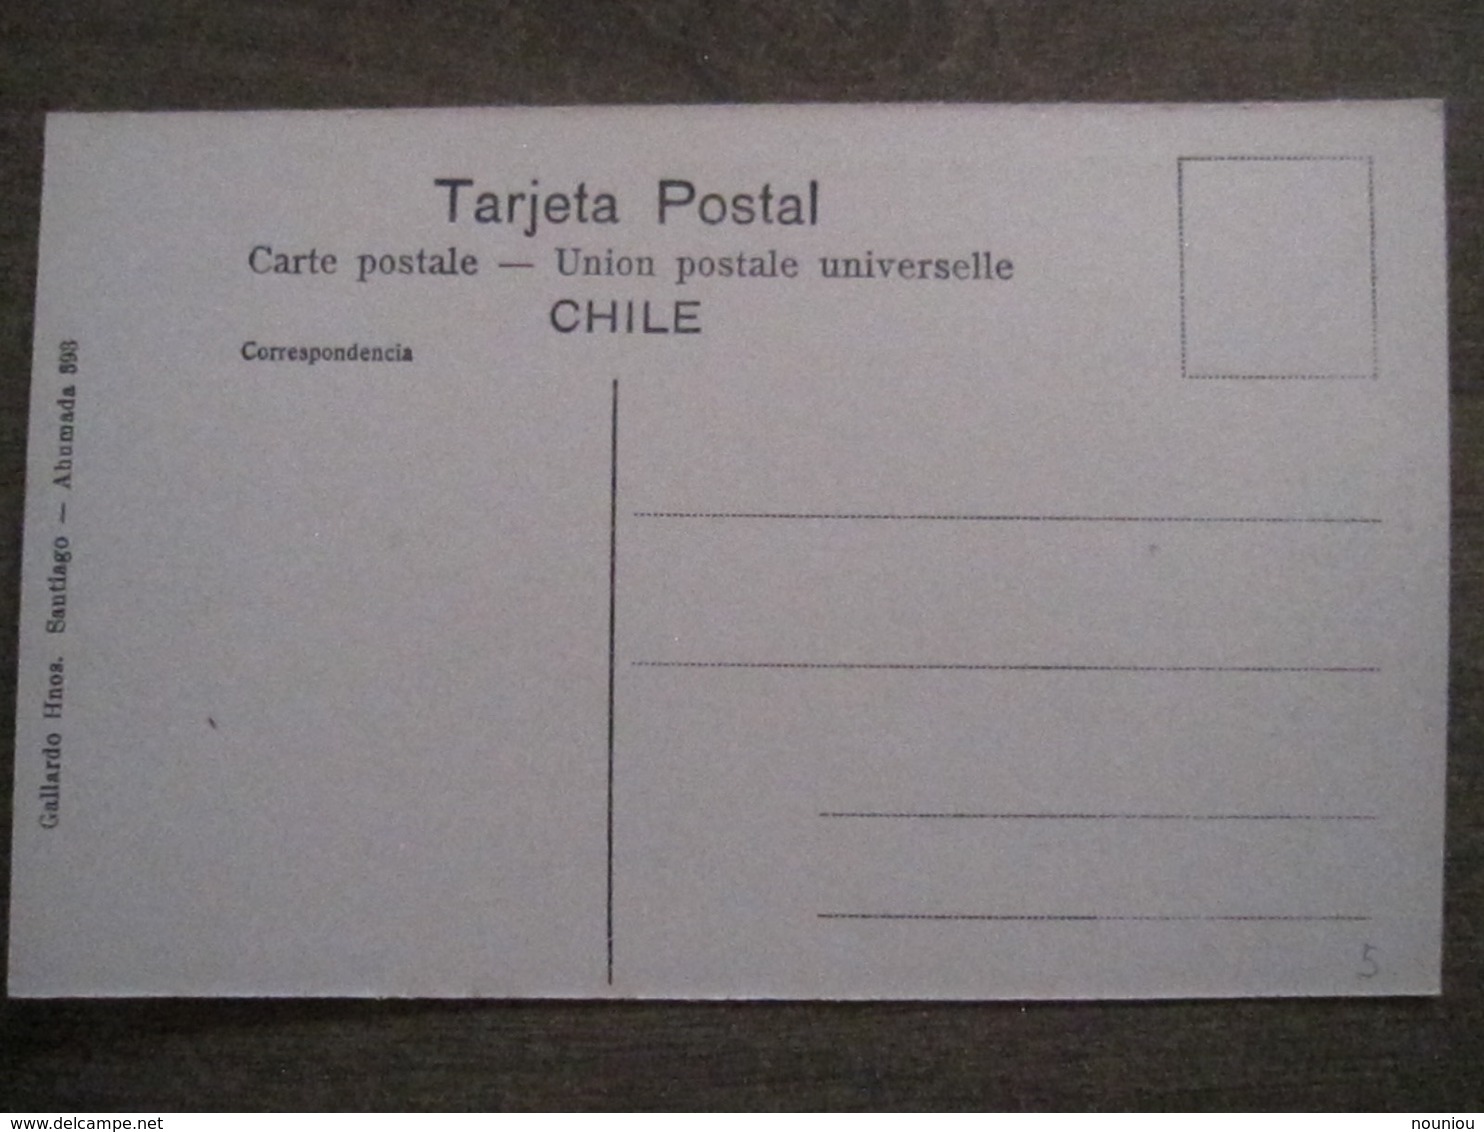 Tarjeta Postal - Chile Chili - Santiago - Parque Cousino El Cerrito - Hnos Ahumada 393 No. 102 - Foto Leon - Cile